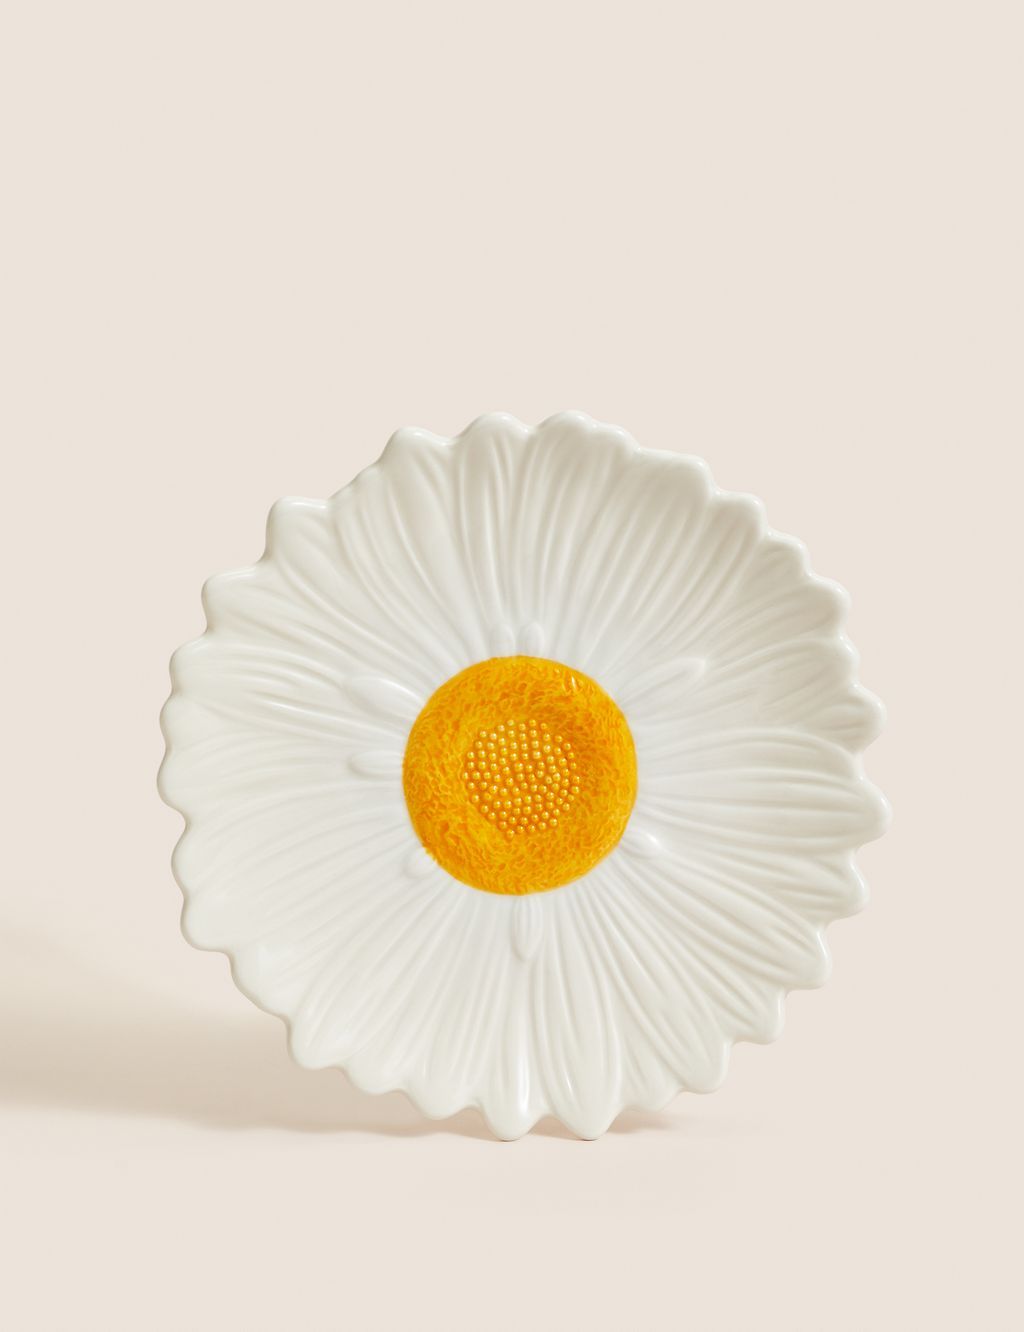 Daisy Side Serving Plate | Marks & Spencer (UK)